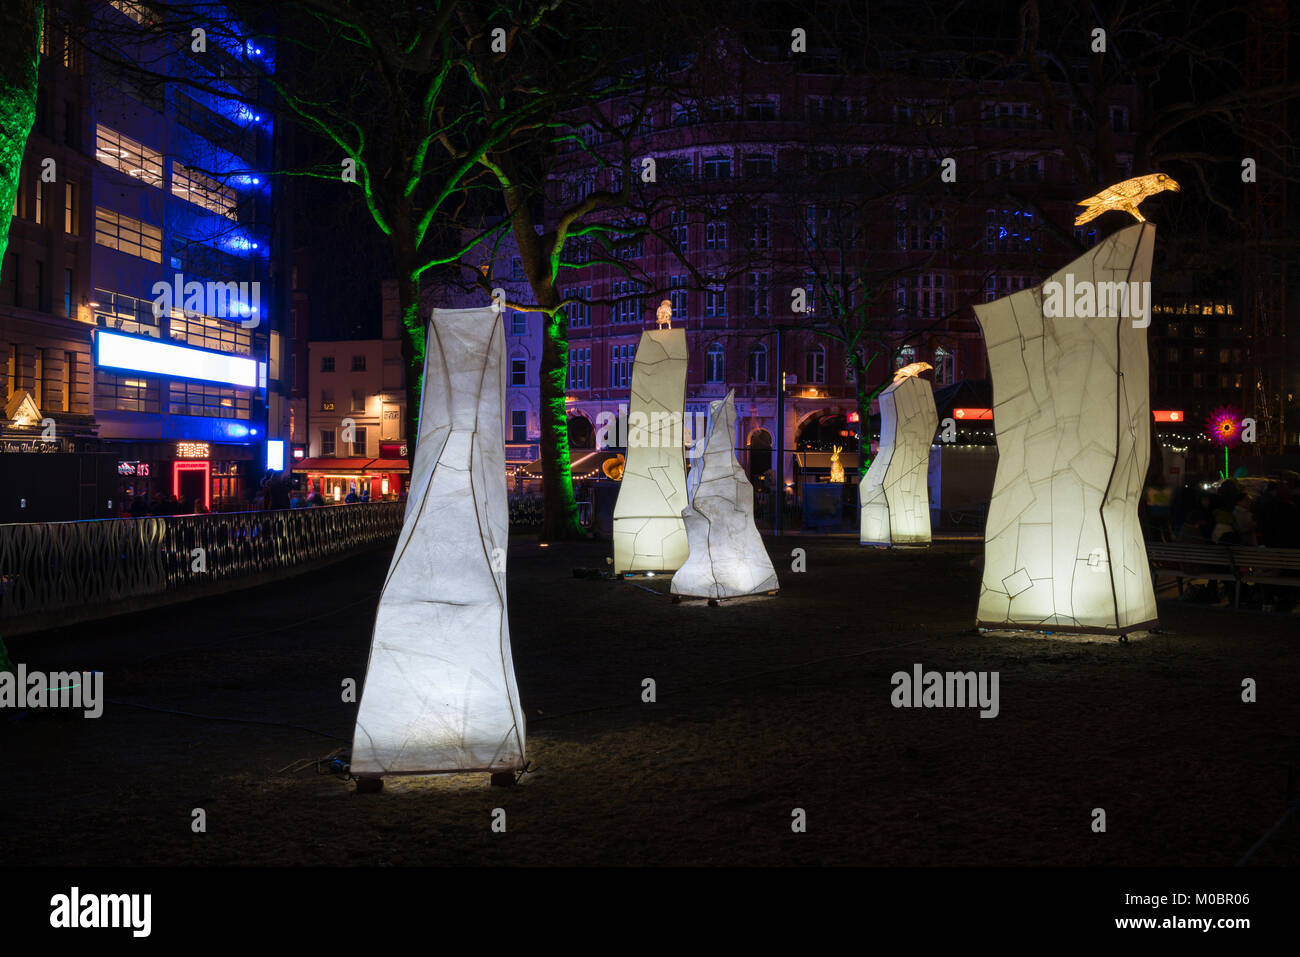 LONDON, UK - 18. JANUAR 2018: Lumiere London, eine Kunst, Installation durch führende britische artins Jo Pocock und die Lanter Firma Leicester Square verwandeln Stockfoto